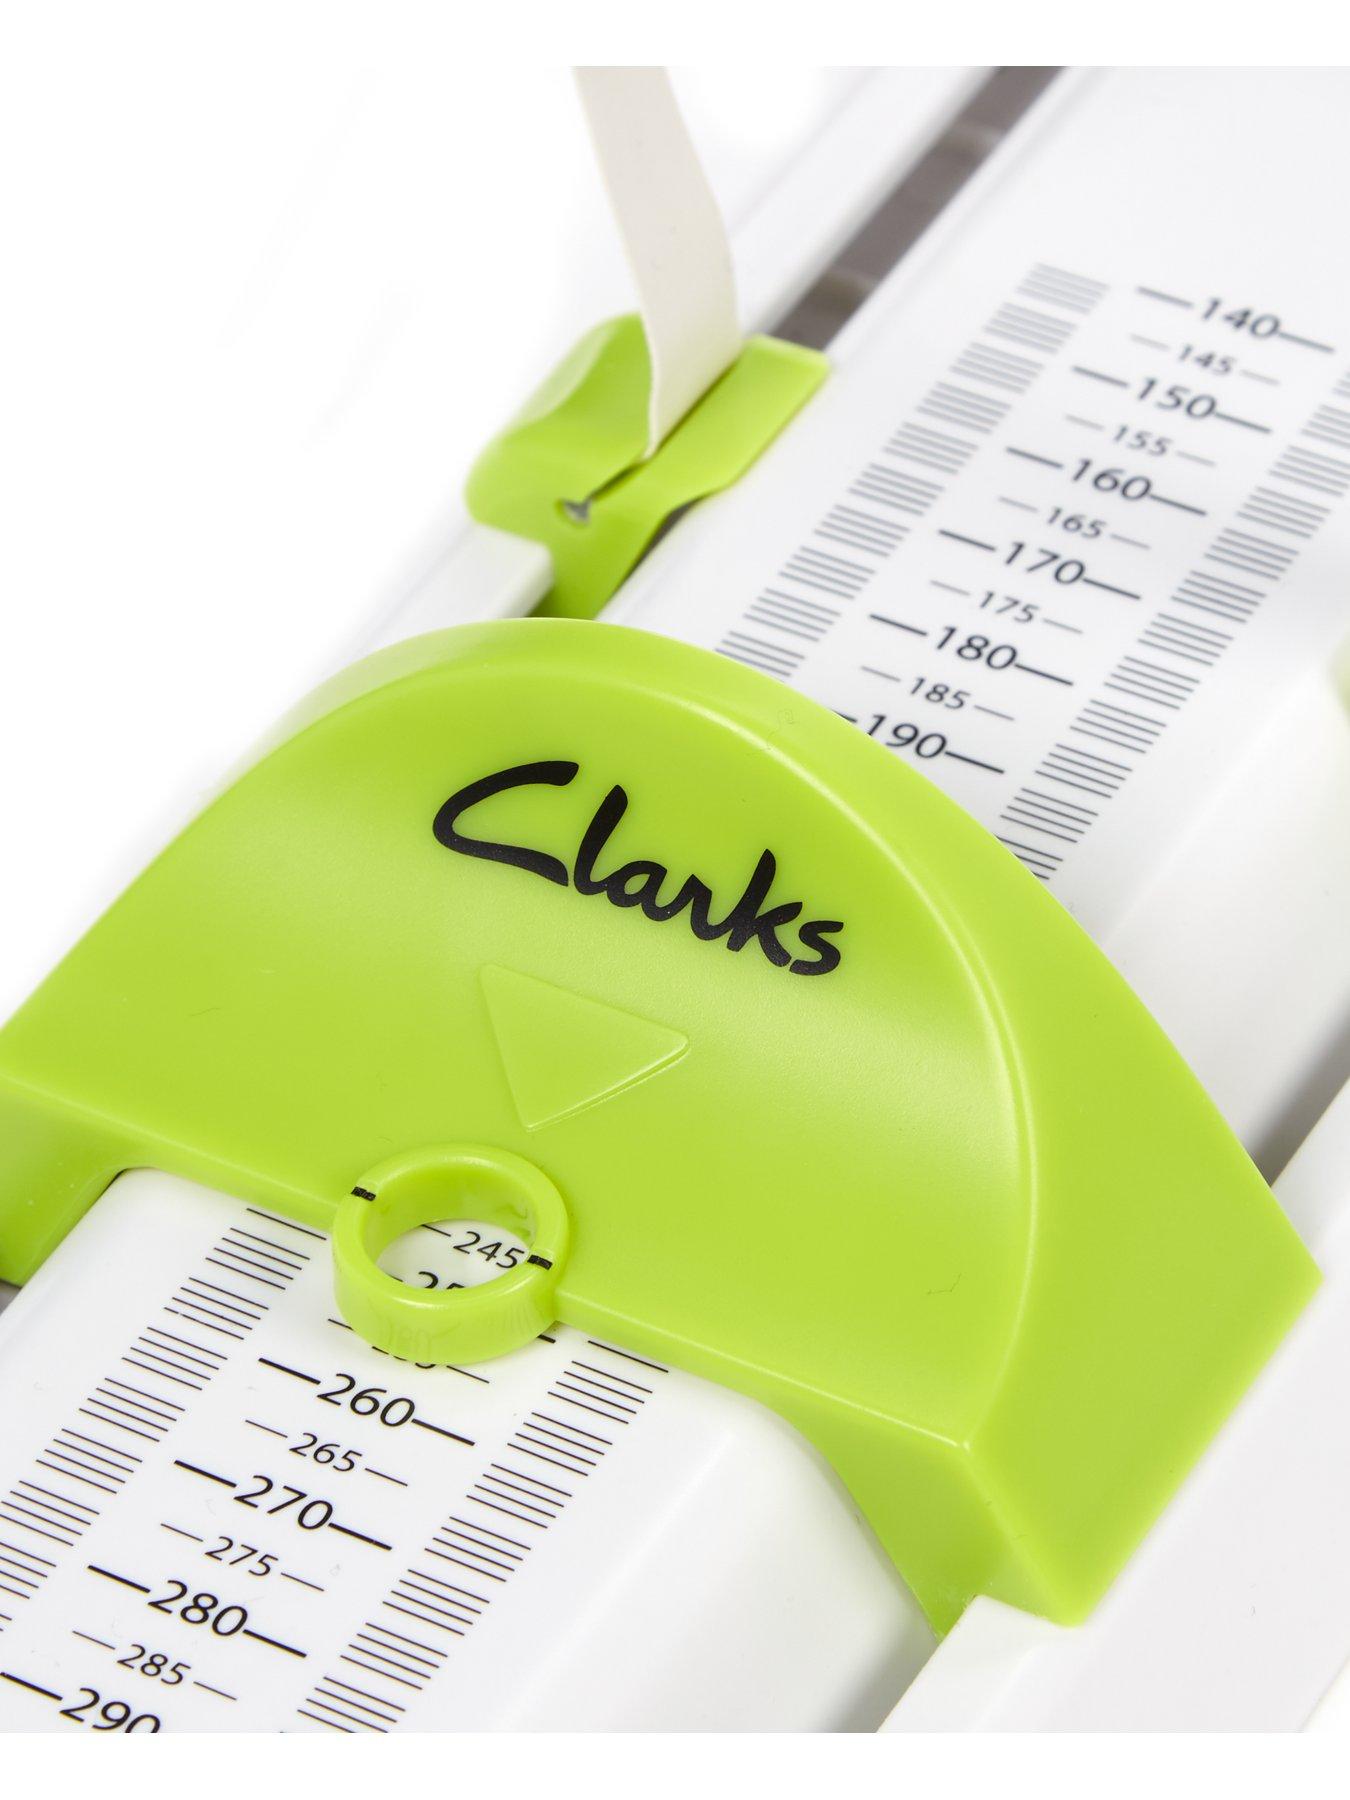 clarks junior gauge calculator